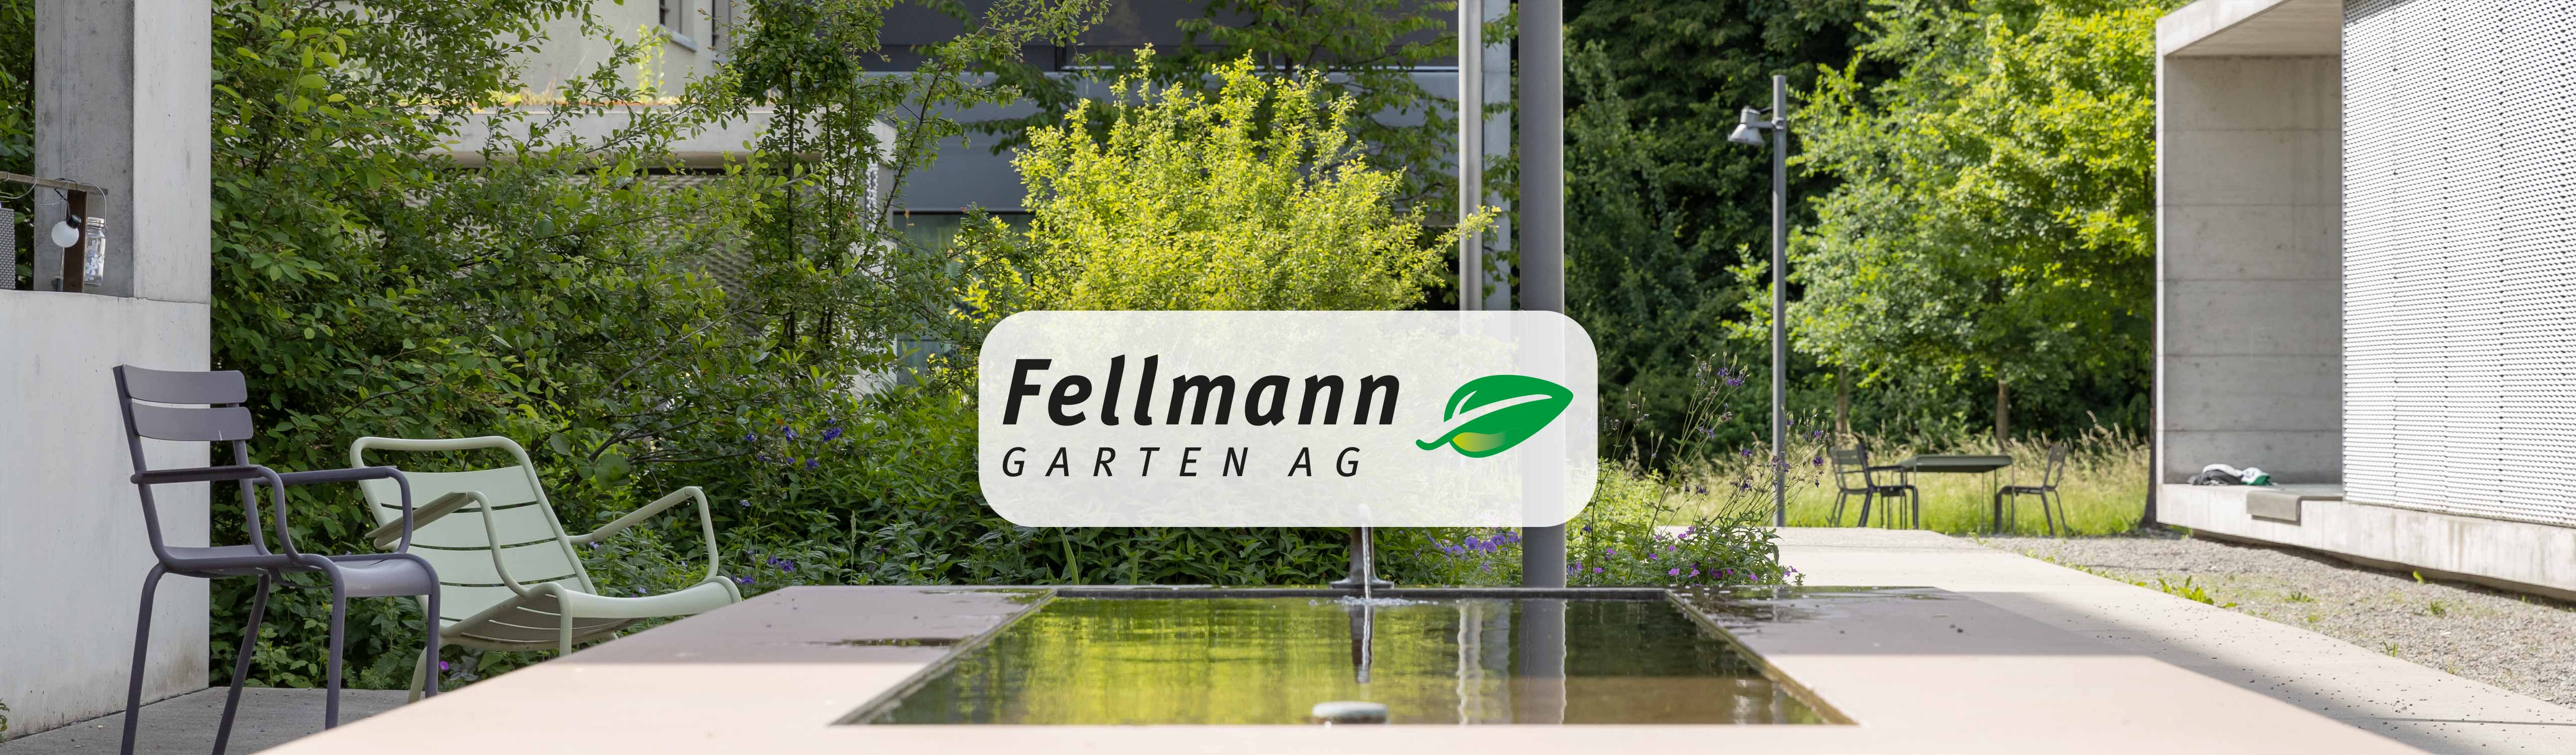 Fellmann Garten AG | Kompetenz im Gartenbau seit 30 Jahren